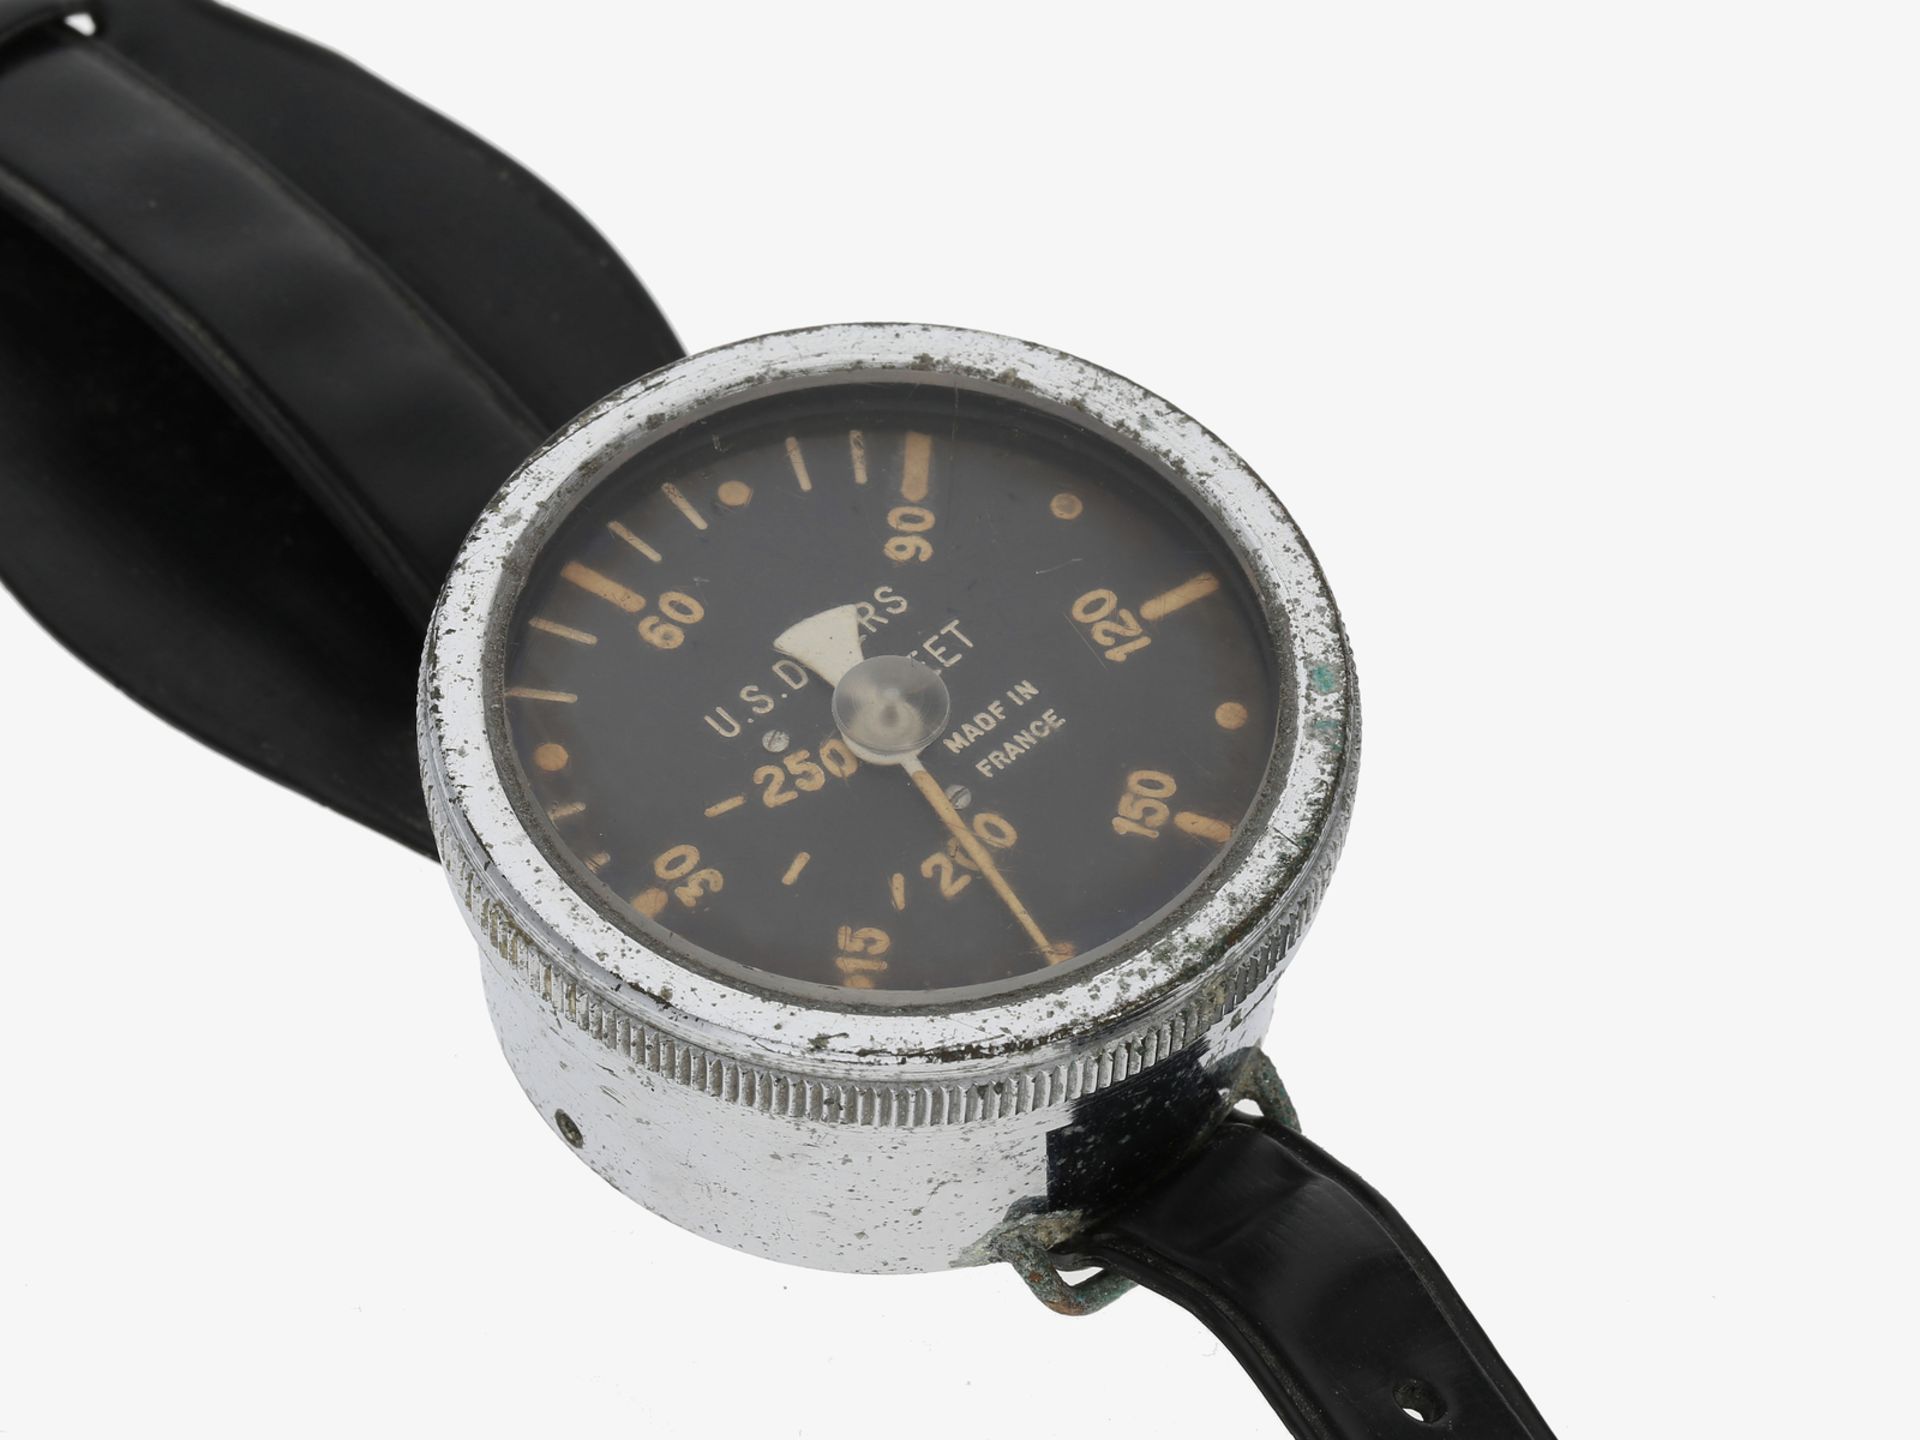 Armbanduhr: alter Tiefenmesser der Taucher der US Navy, Zifferblatt bezeichnet U.S. Divers, 1960er-J